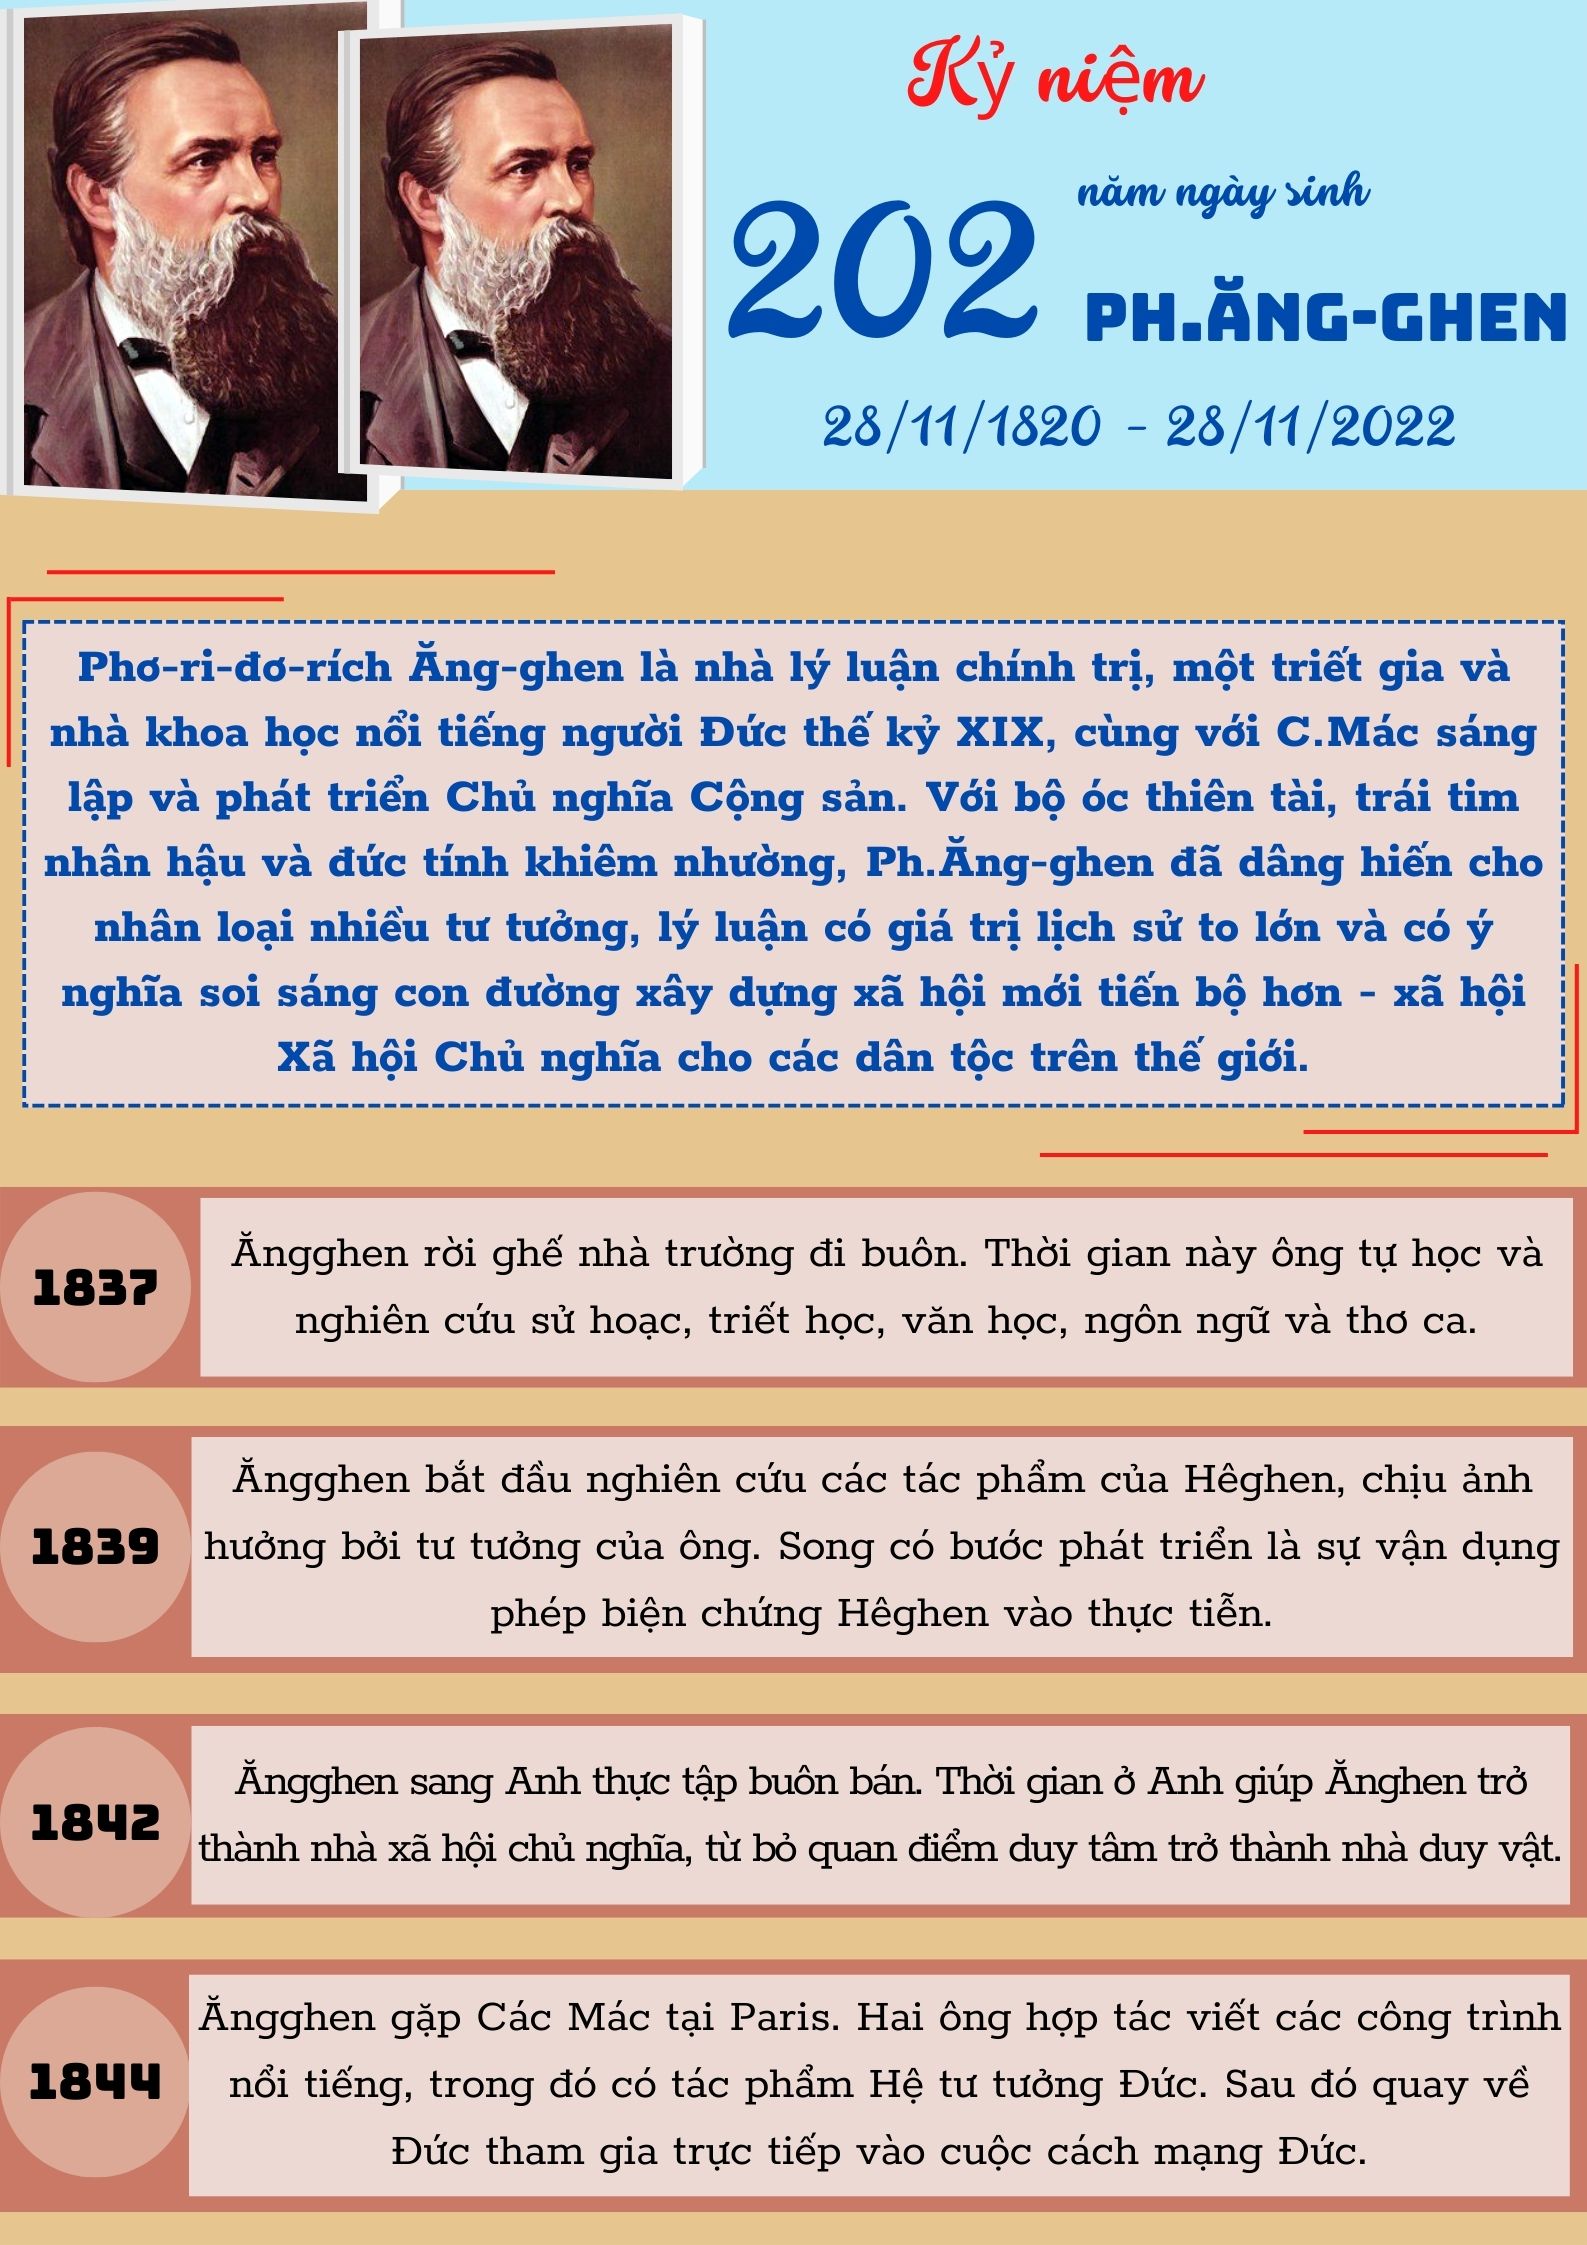 Kỷ niệm 202 năm Ngày sinh Ph.Ăng-ghen (28/11/1820 - 28/11/2022)